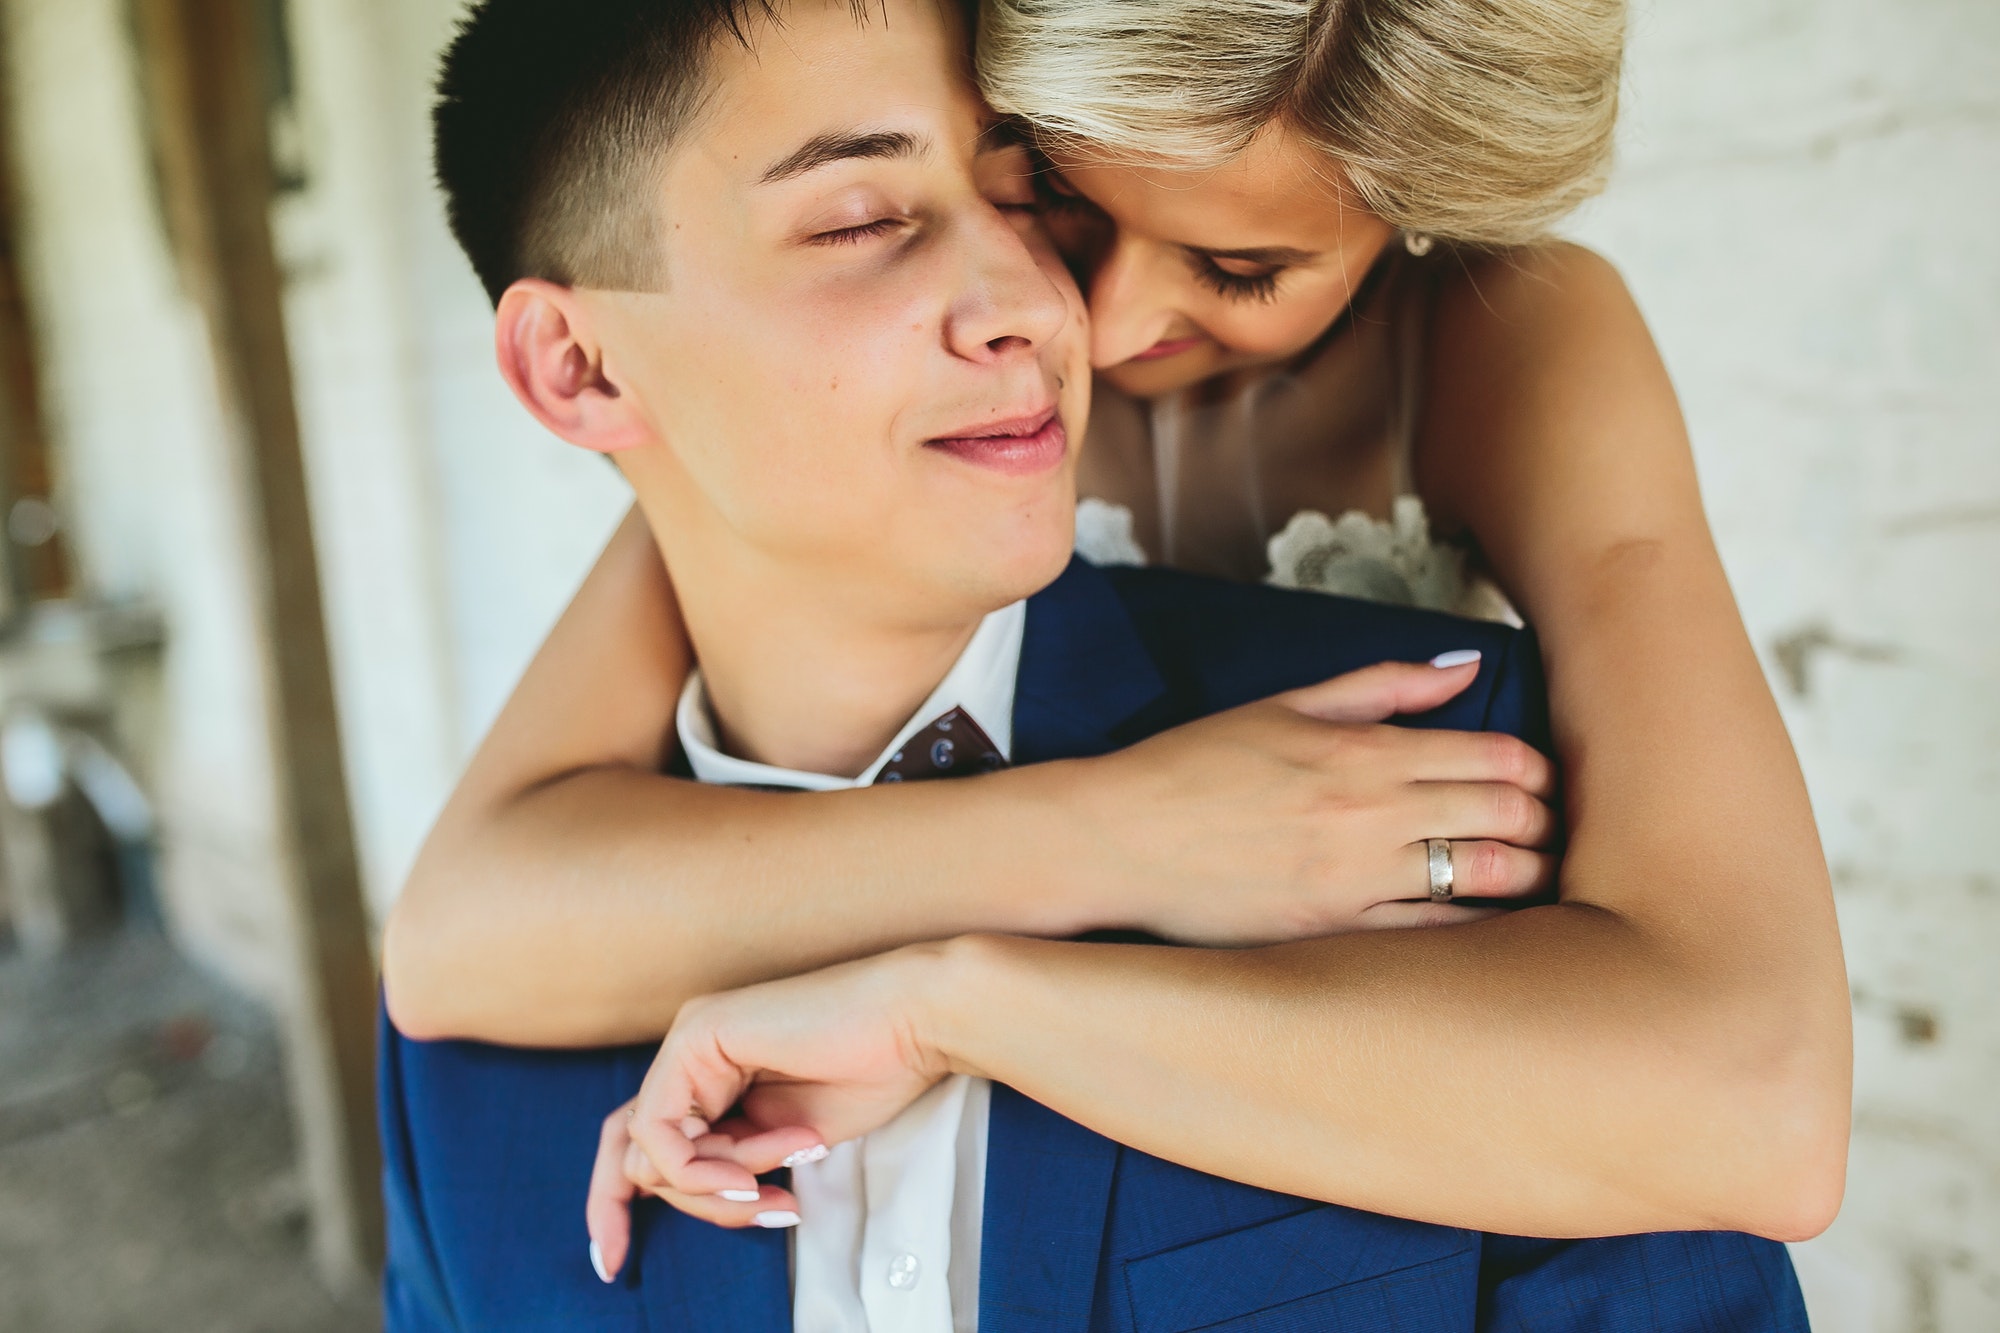 Bride embraces bridegroom